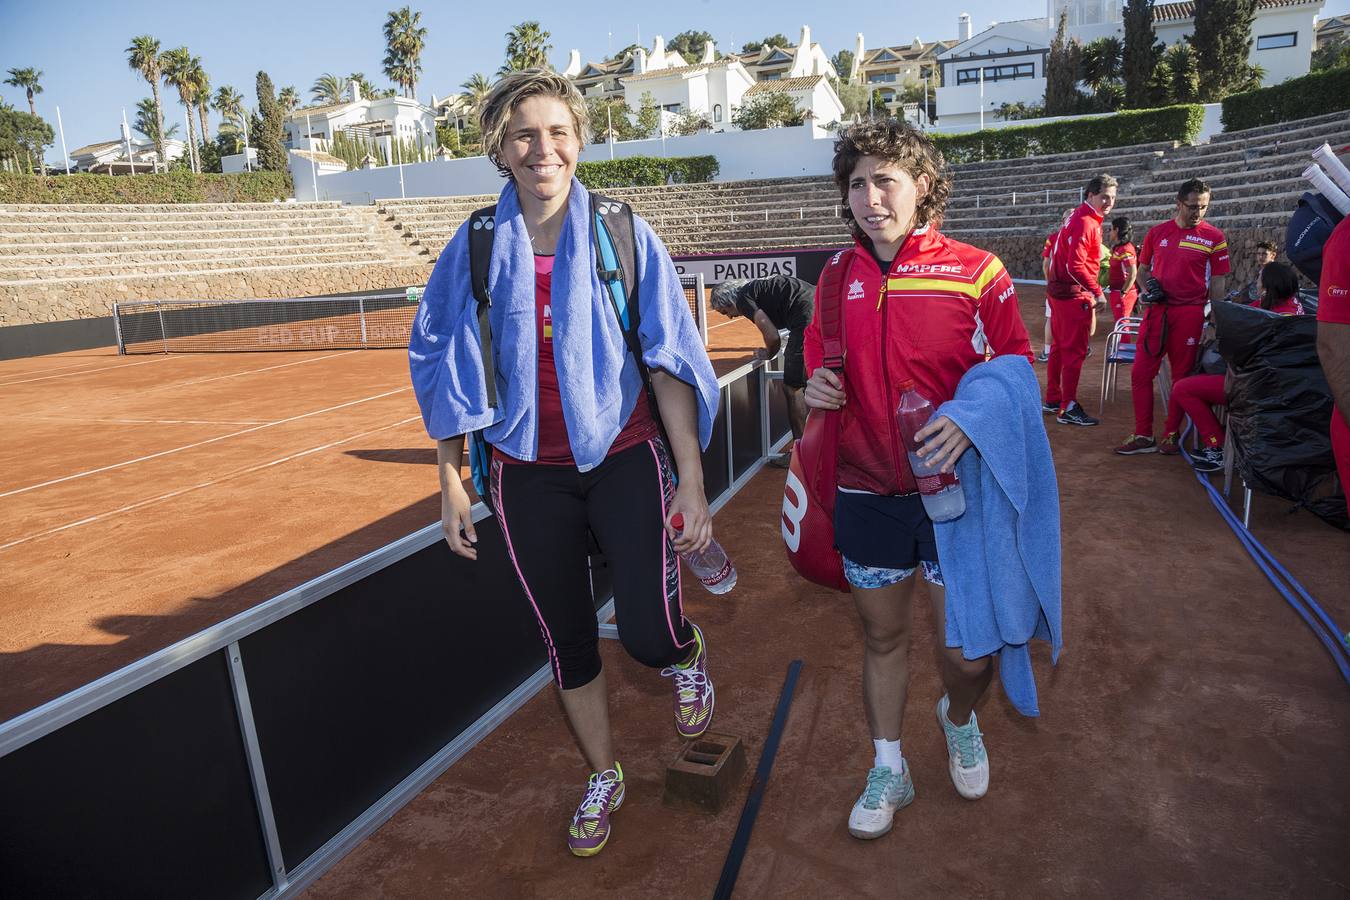 La yeclana María José Martínez, de 35 años, y la canaria Carla Suárez, de 29, fueron ayer las dos primeras jugadoras del equipo español de Copa Federación en tomar el pulso a la tierra batida del complejo de tenis de La Manga Club